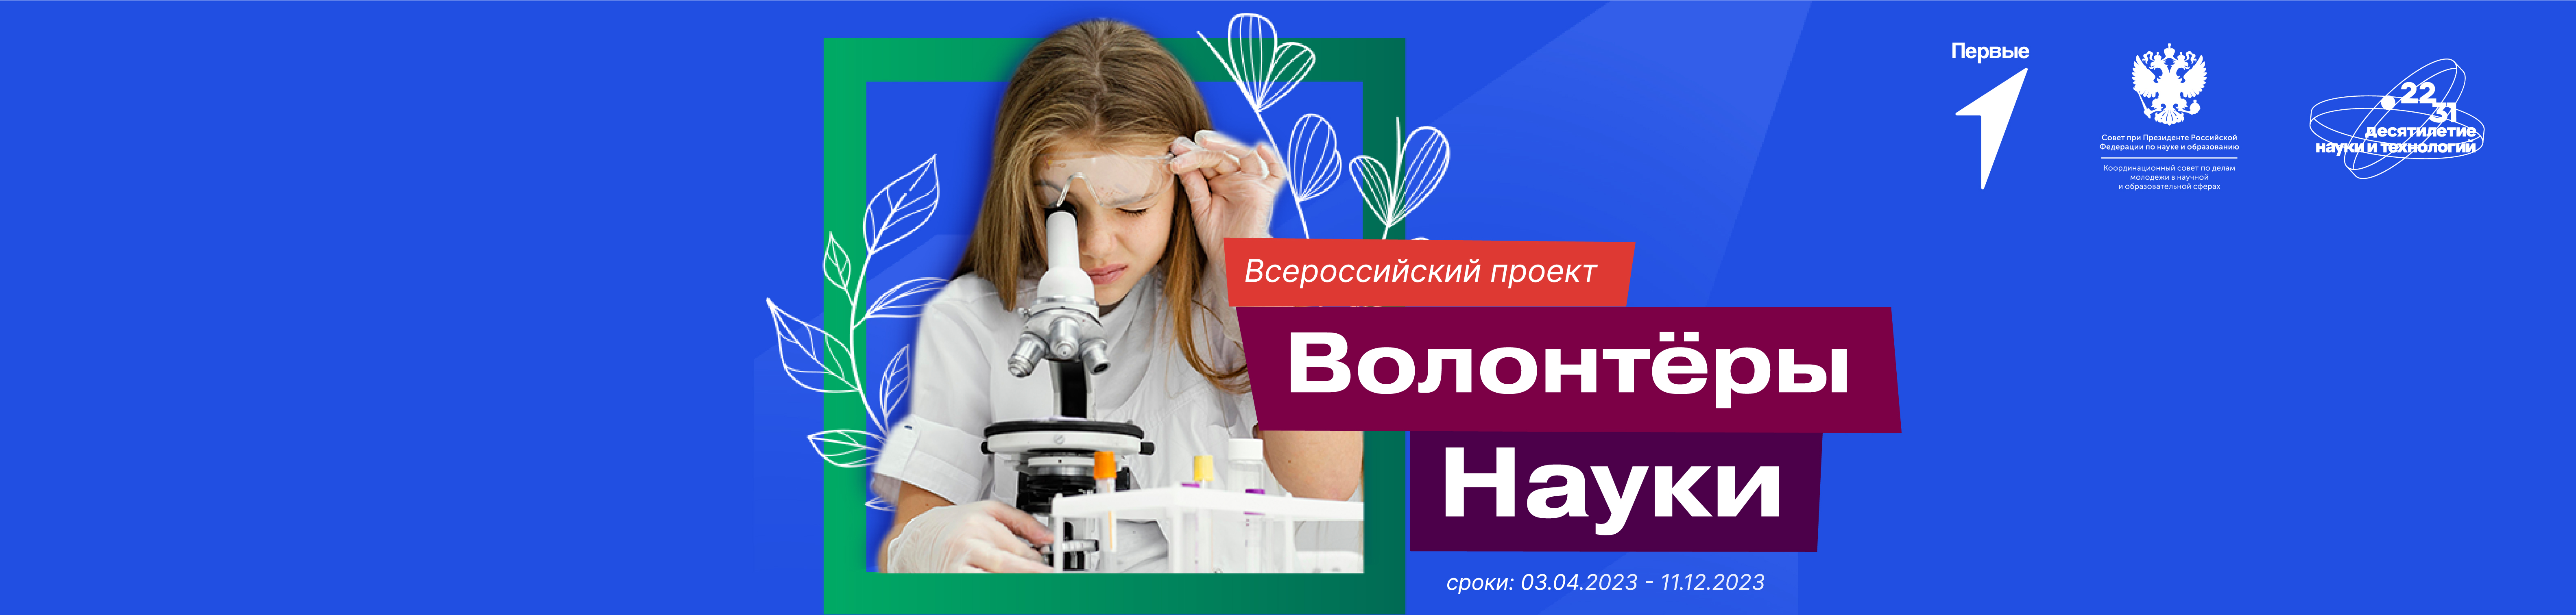 Всероссийский проект «Волонтеры науки»